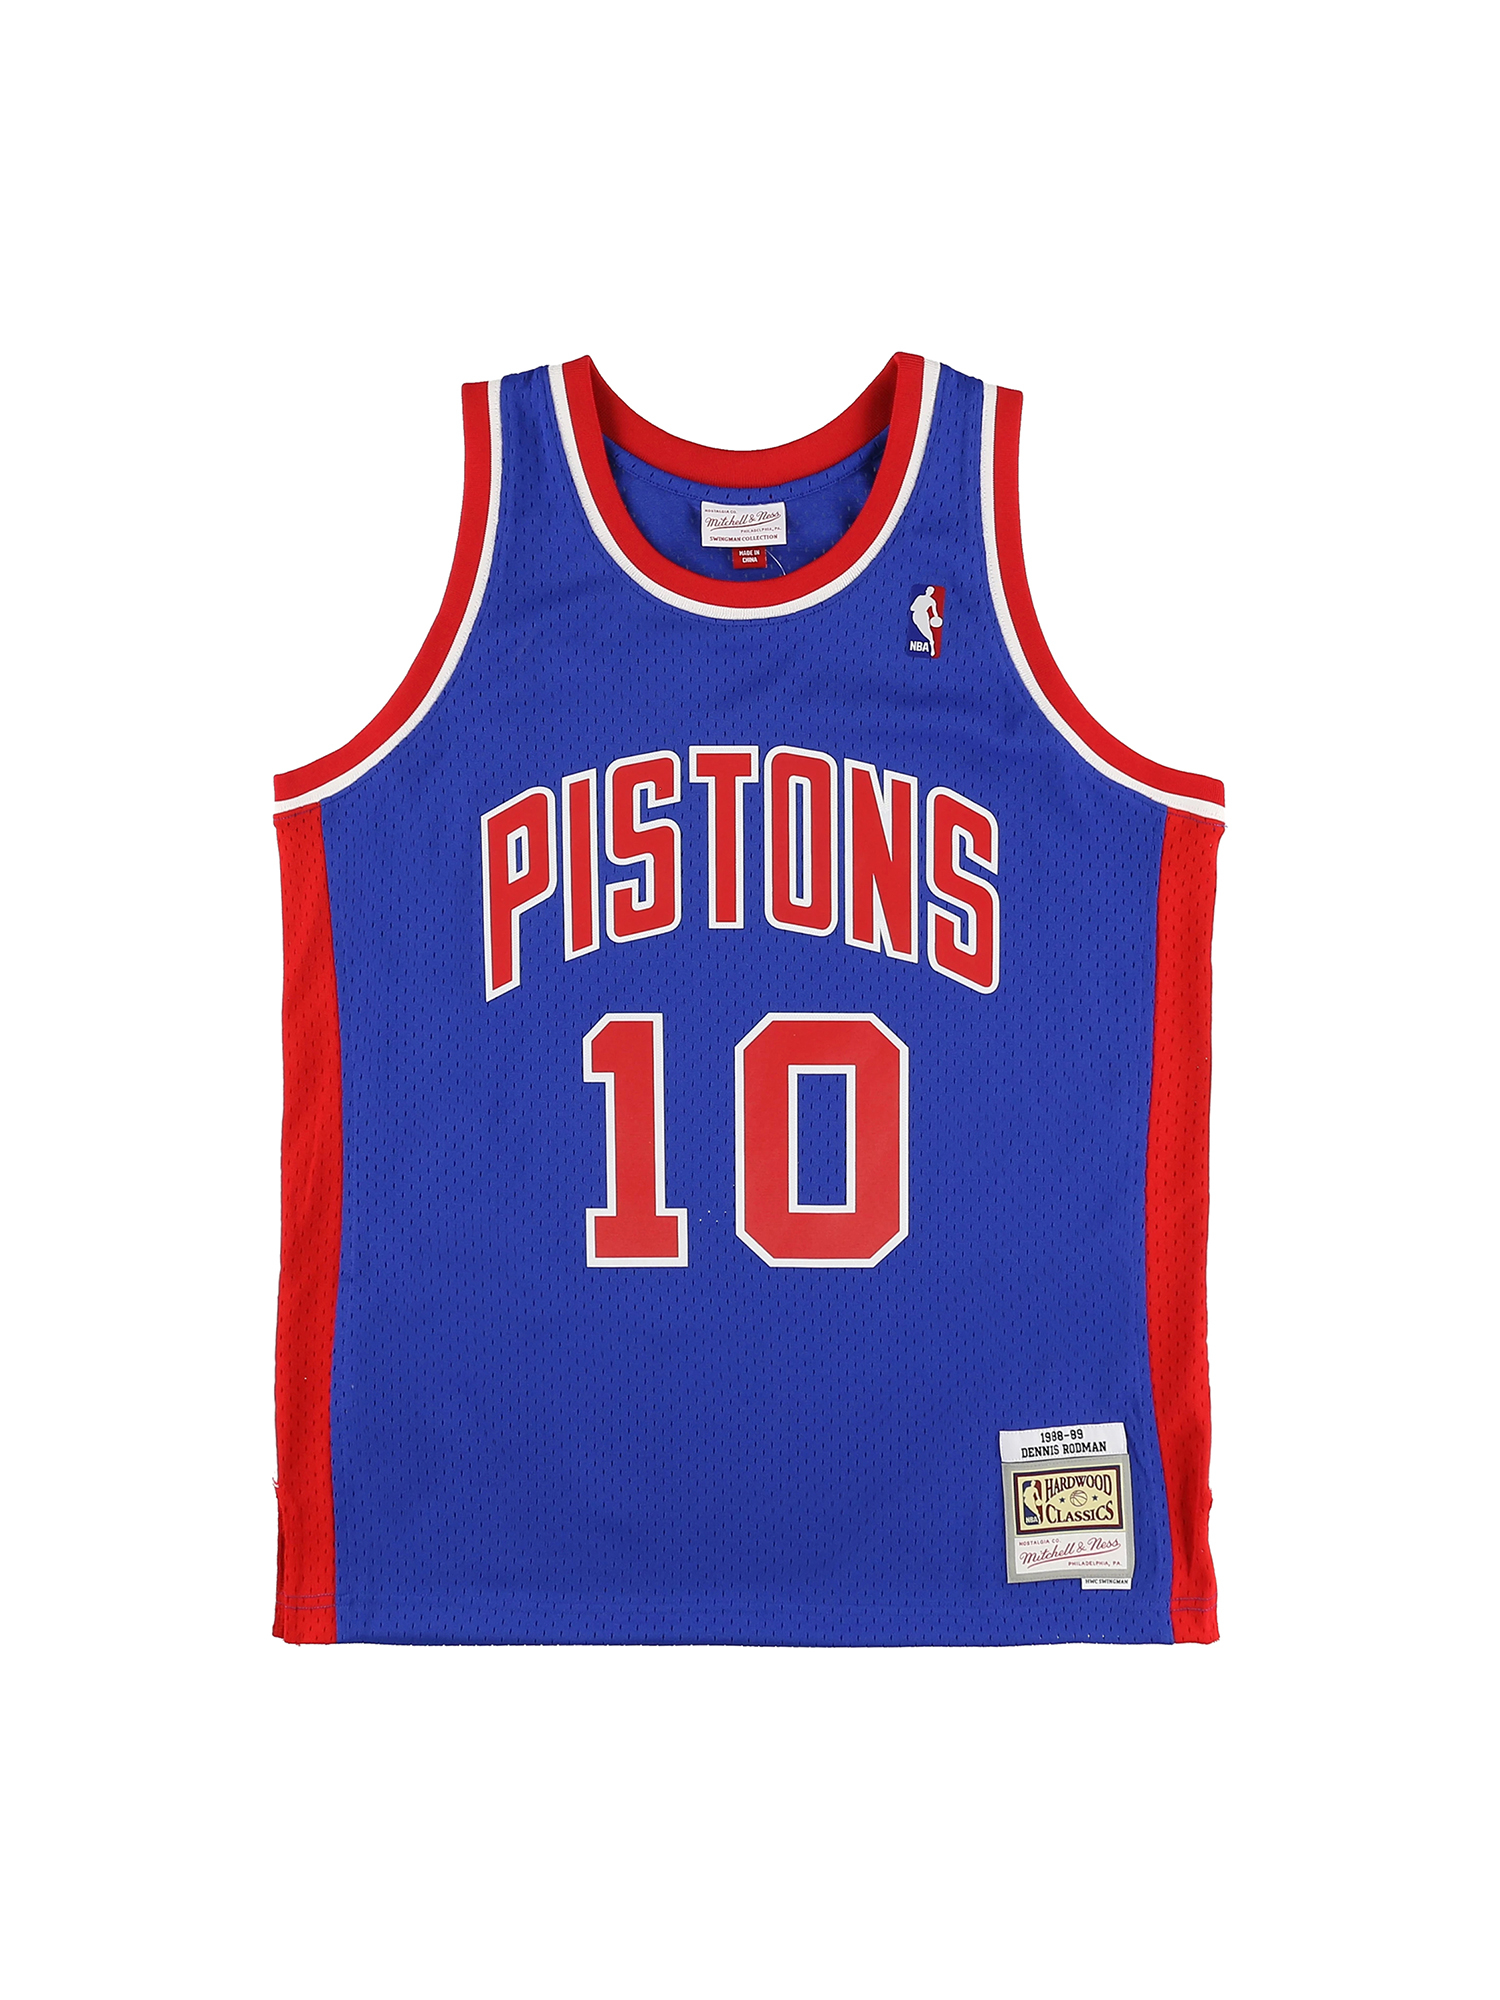 デニス・ロッドマン ピストンズ ロード スイングマンジャージ 1988-89 DETROIT PISTONS NBA SWINGMAN ROAD  JERSEY PISTONS 88 DENNIS RO